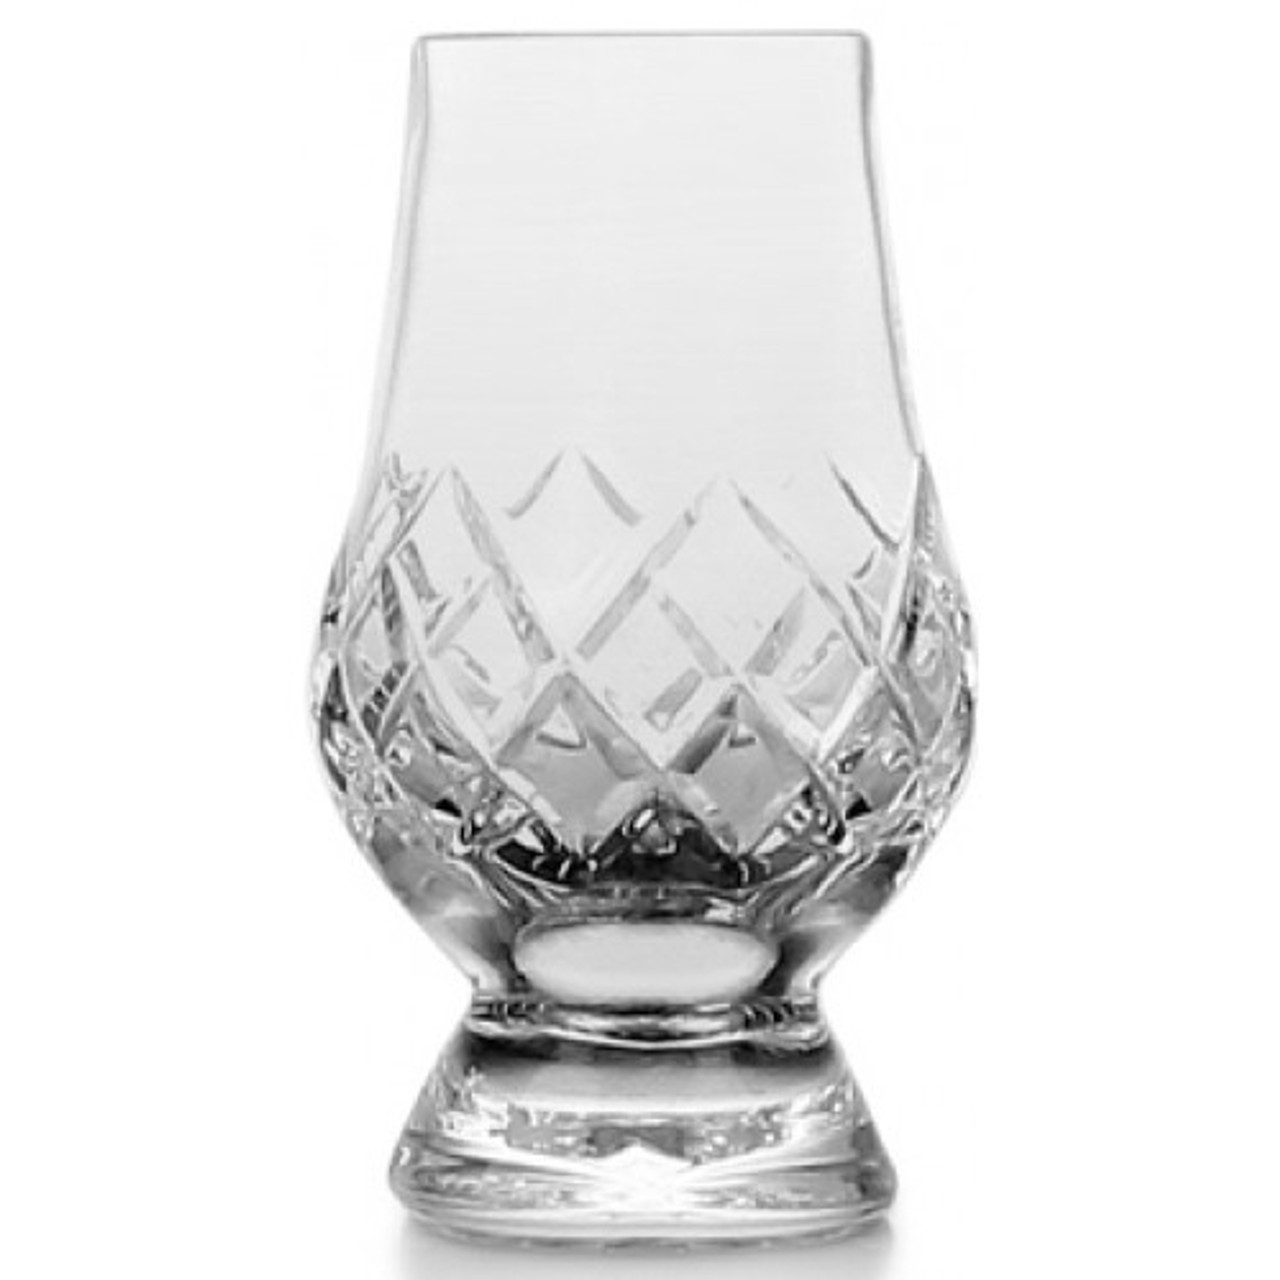 Cut Crystal Glencairn Whisky Glass Burnett S And Struth Scottish Regalia